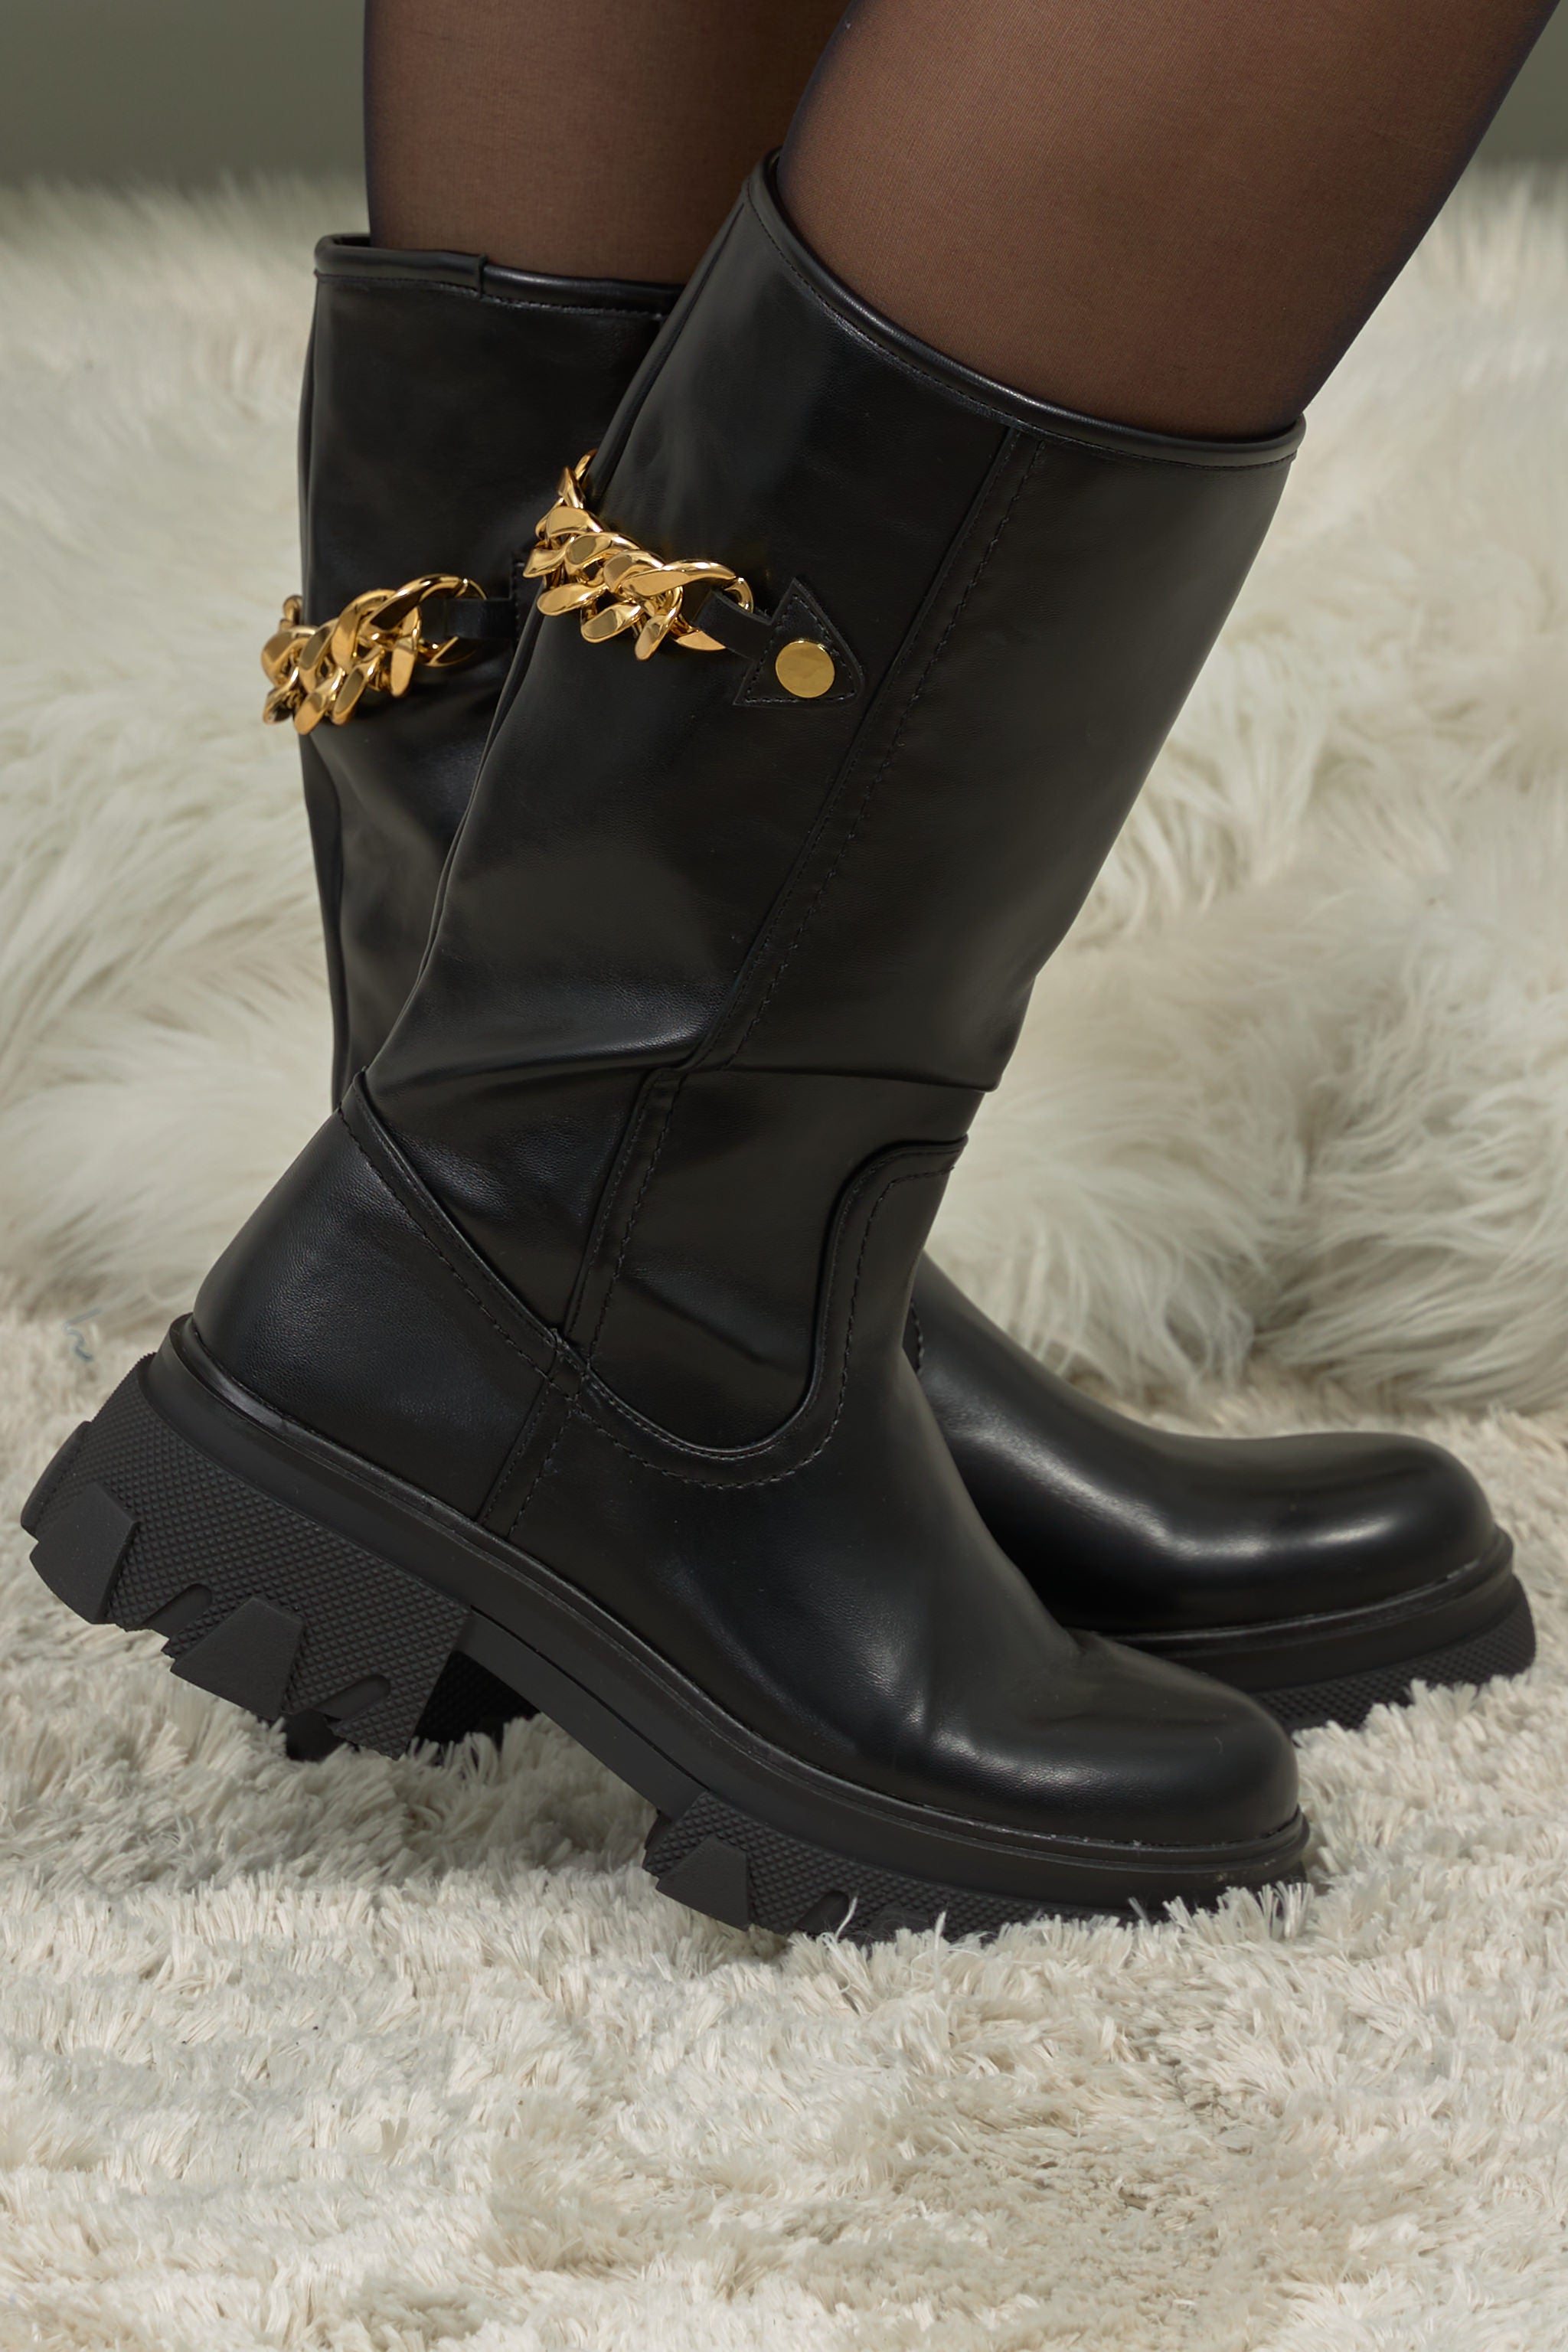 Stiefel mit Goldkette in schwarz von Trends & Lifestyle Deutschland GmbH